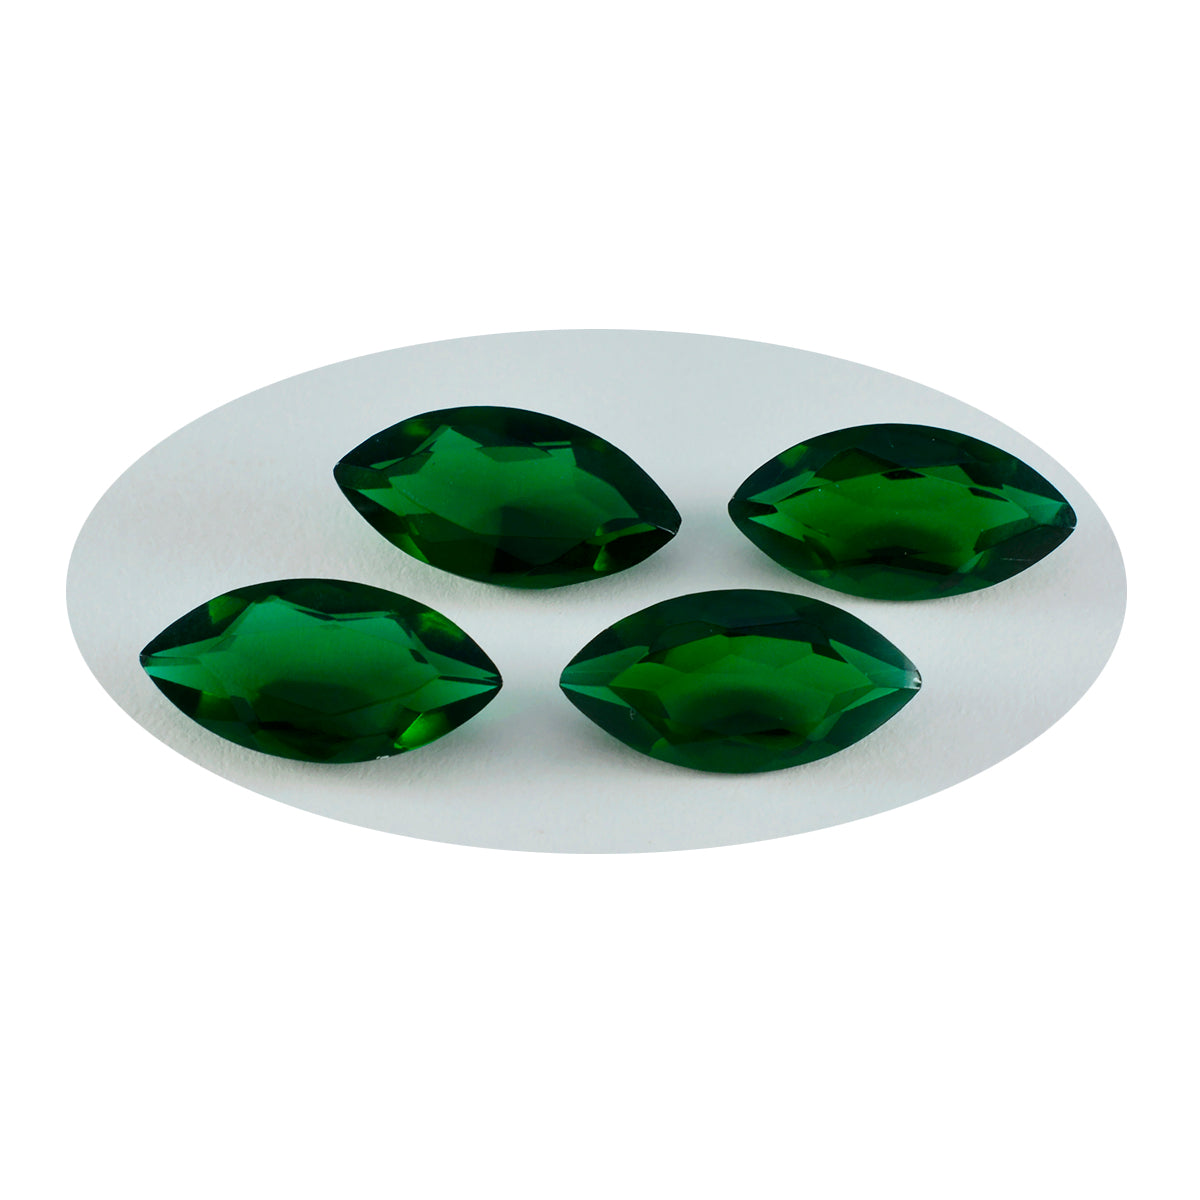 Riyogems 1 pieza Esmeralda verde CZ facetada 3x5mm forma ovalada gema suelta de buena calidad